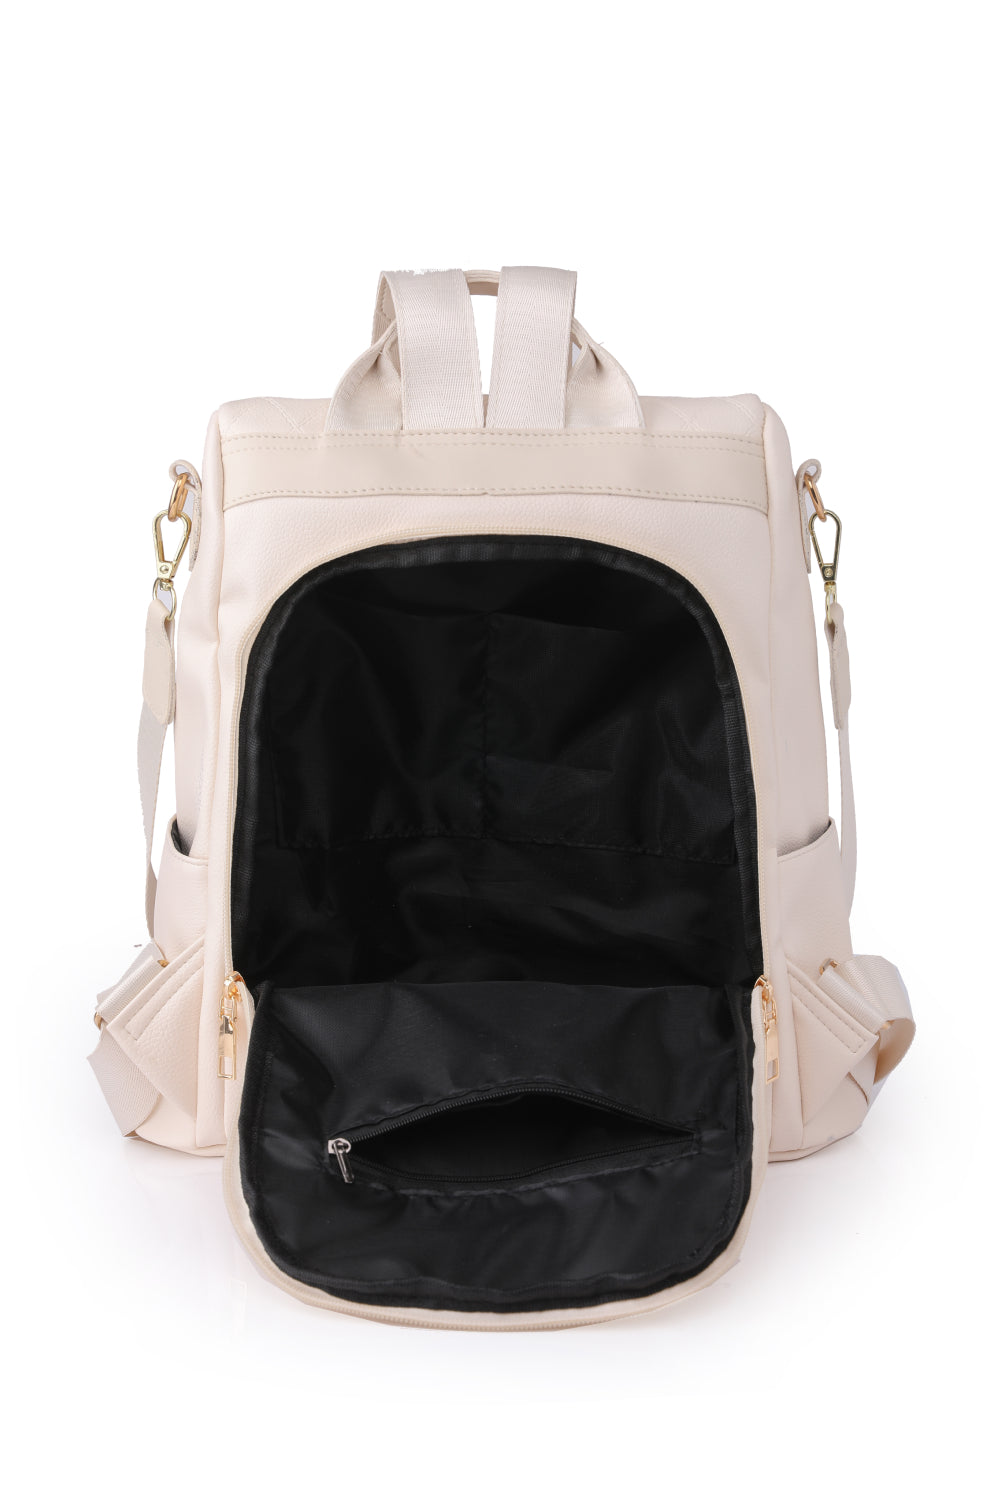 Light Gray Pum-Pum Zipper Backpack Clothing